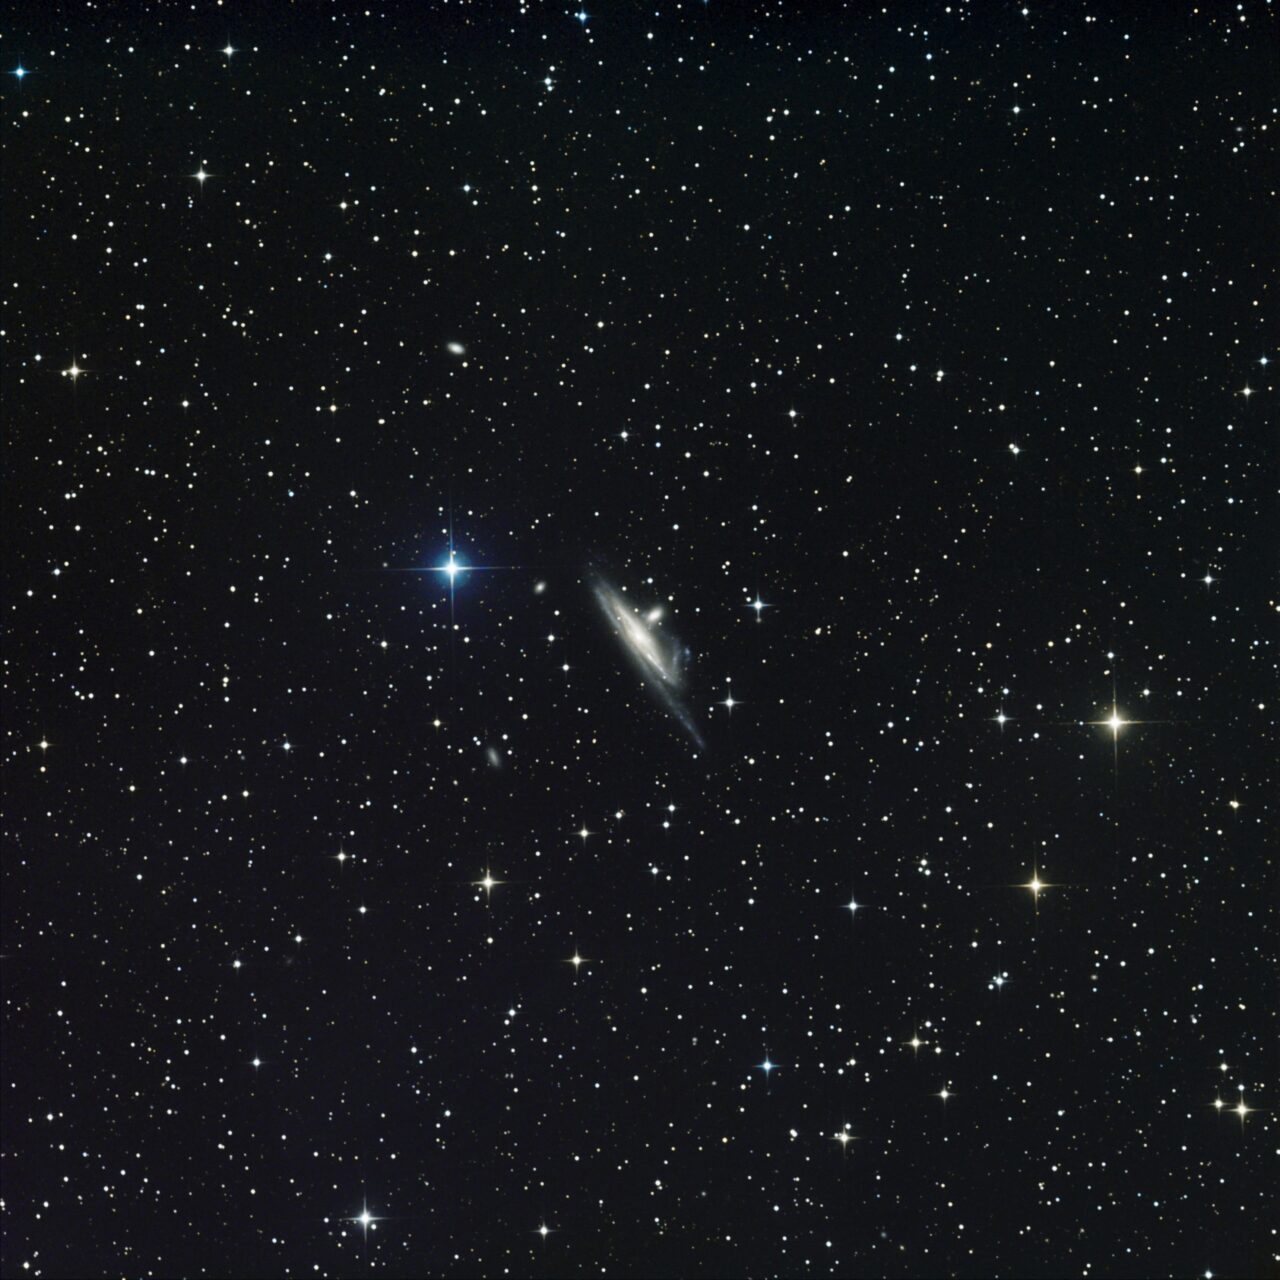 NGC 1532